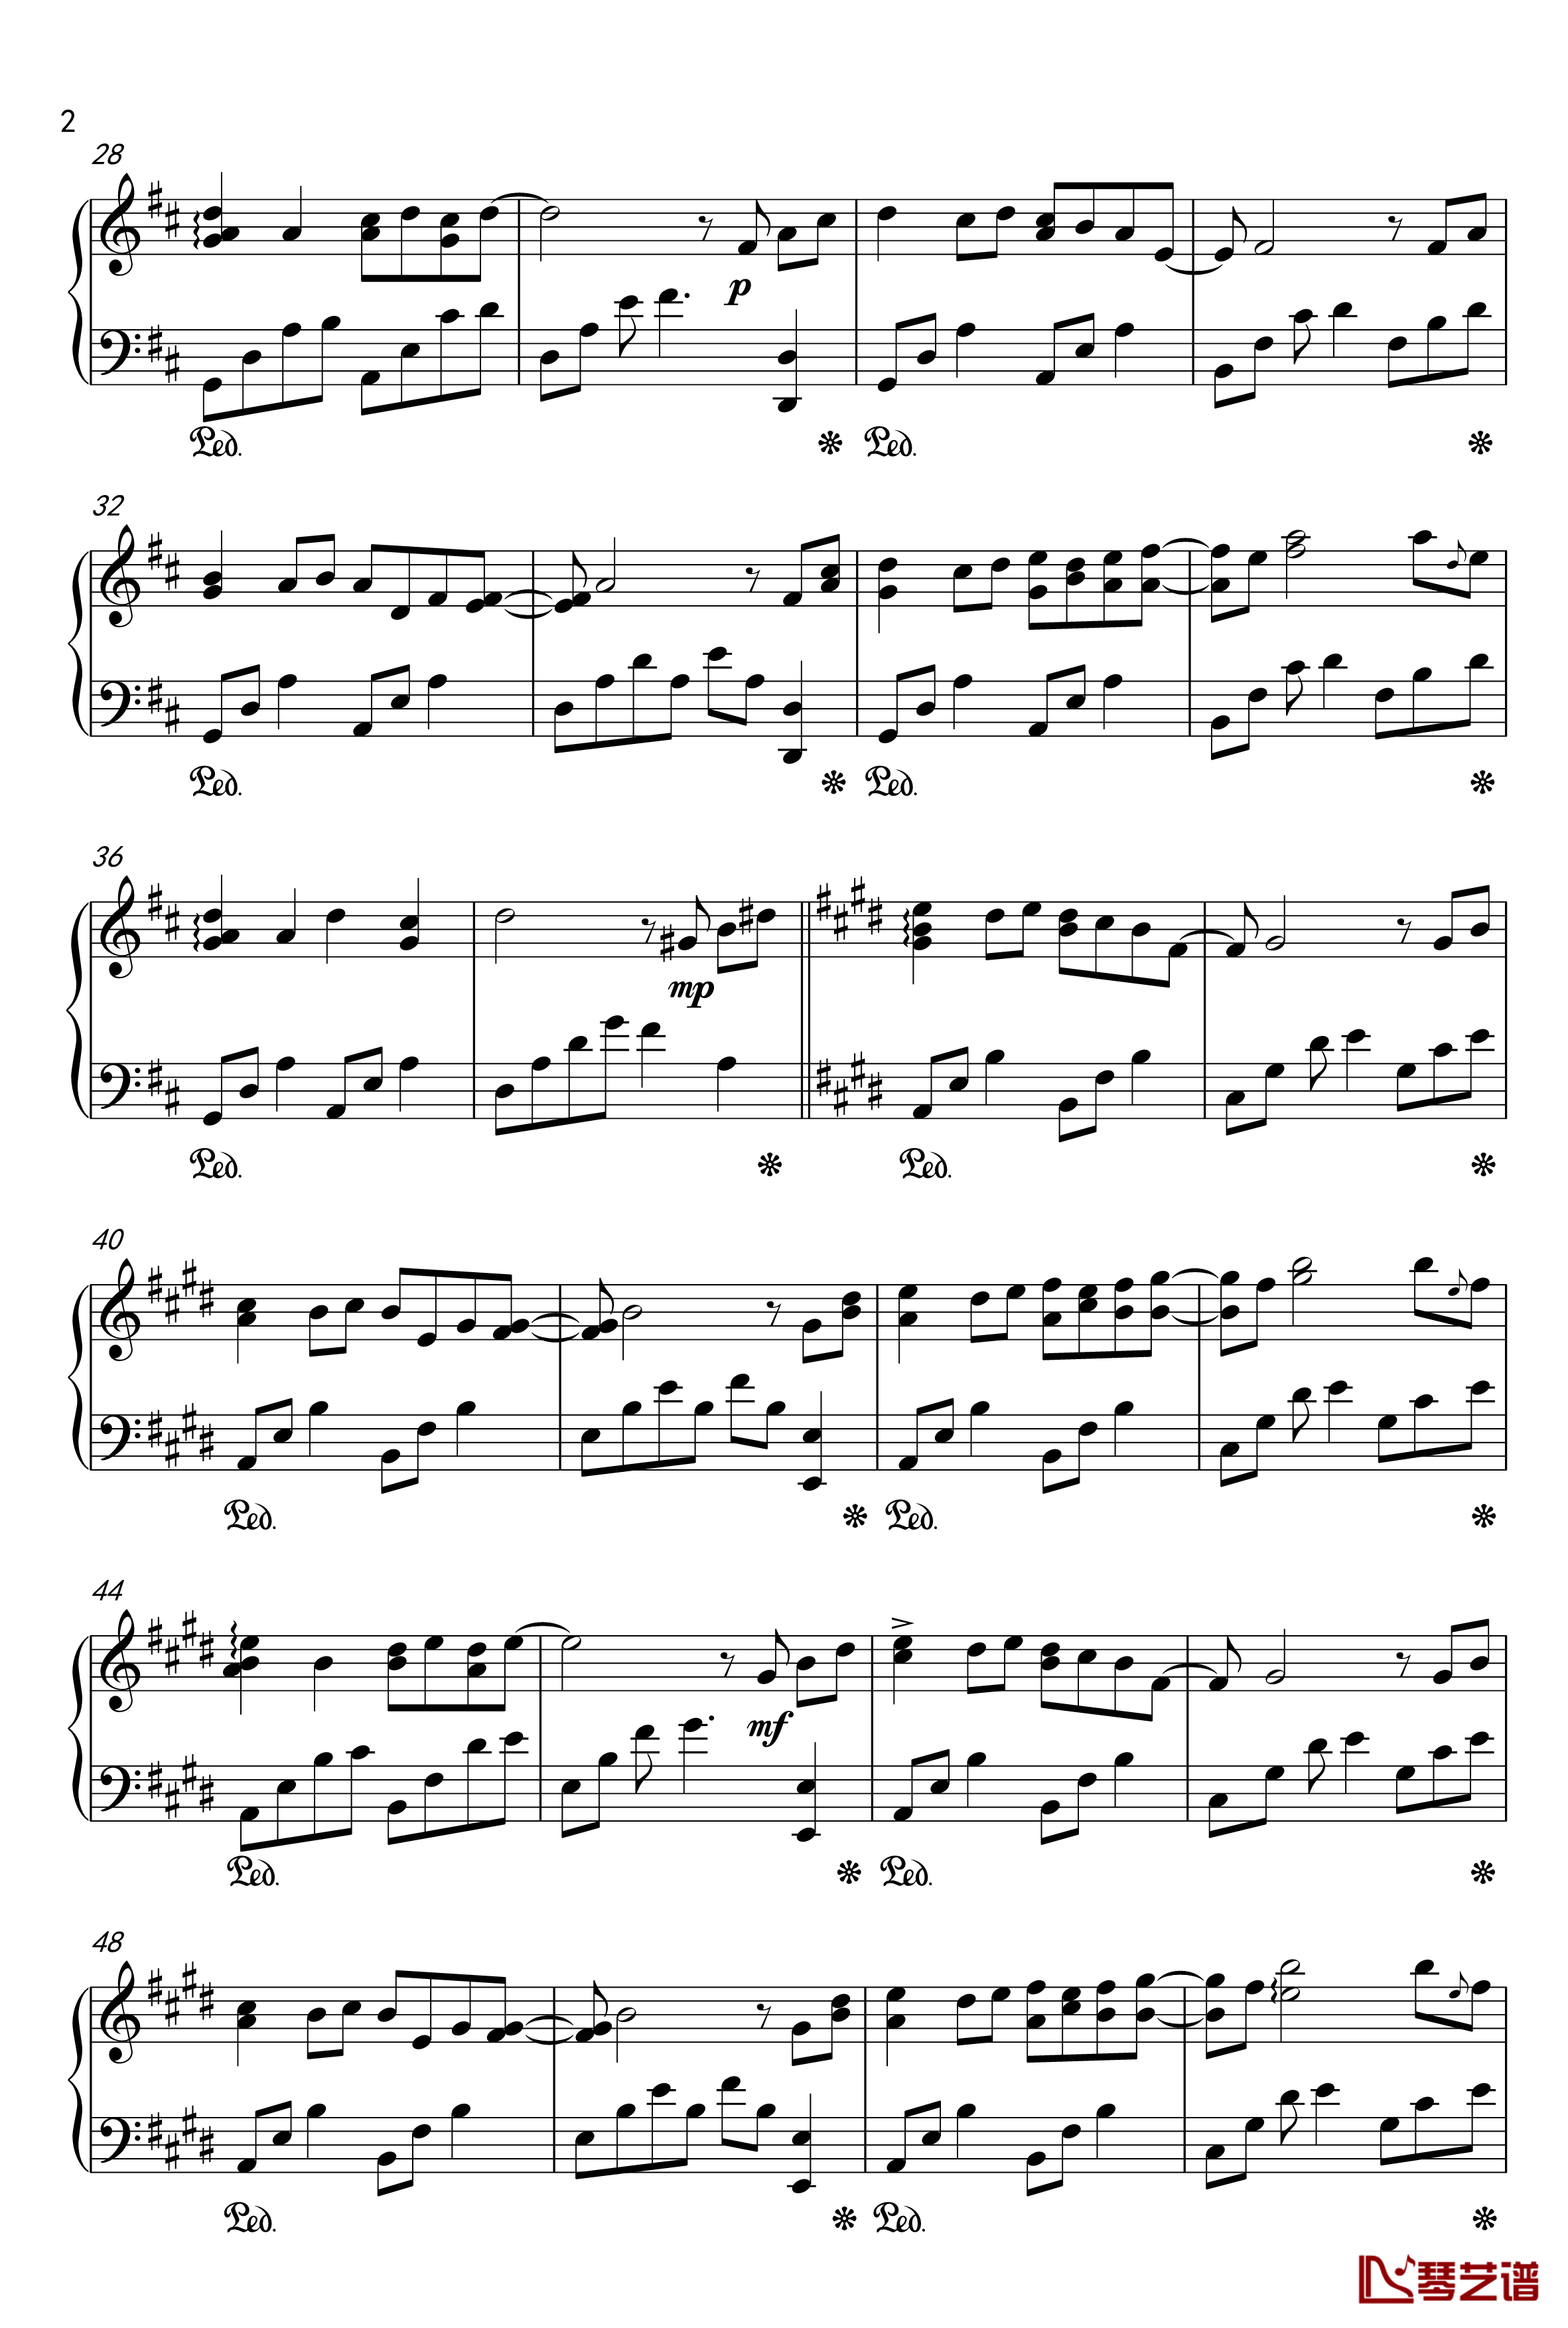 下一个你钢琴谱-第八钢琴曲 -sjy6152